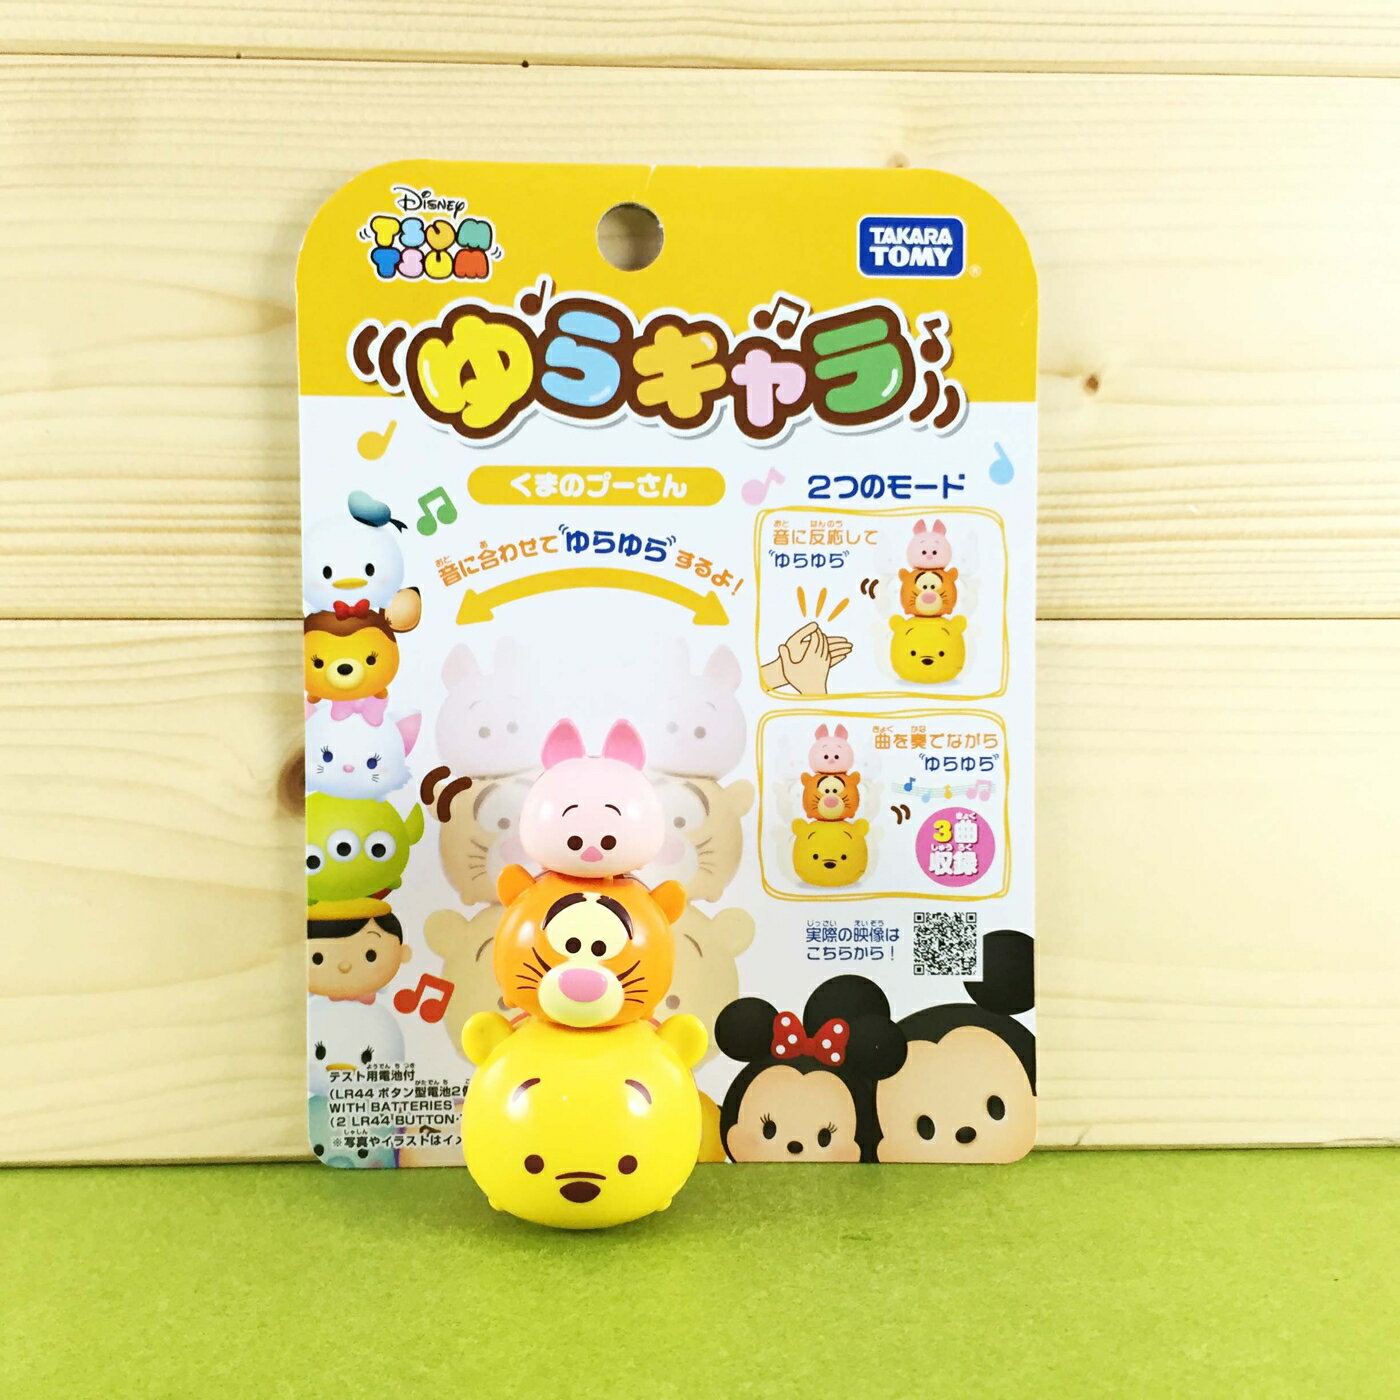 【震撼精品百貨】Winnie the Pooh 小熊維尼 搖擺音樂玩具-TSUM 震撼日式精品百貨